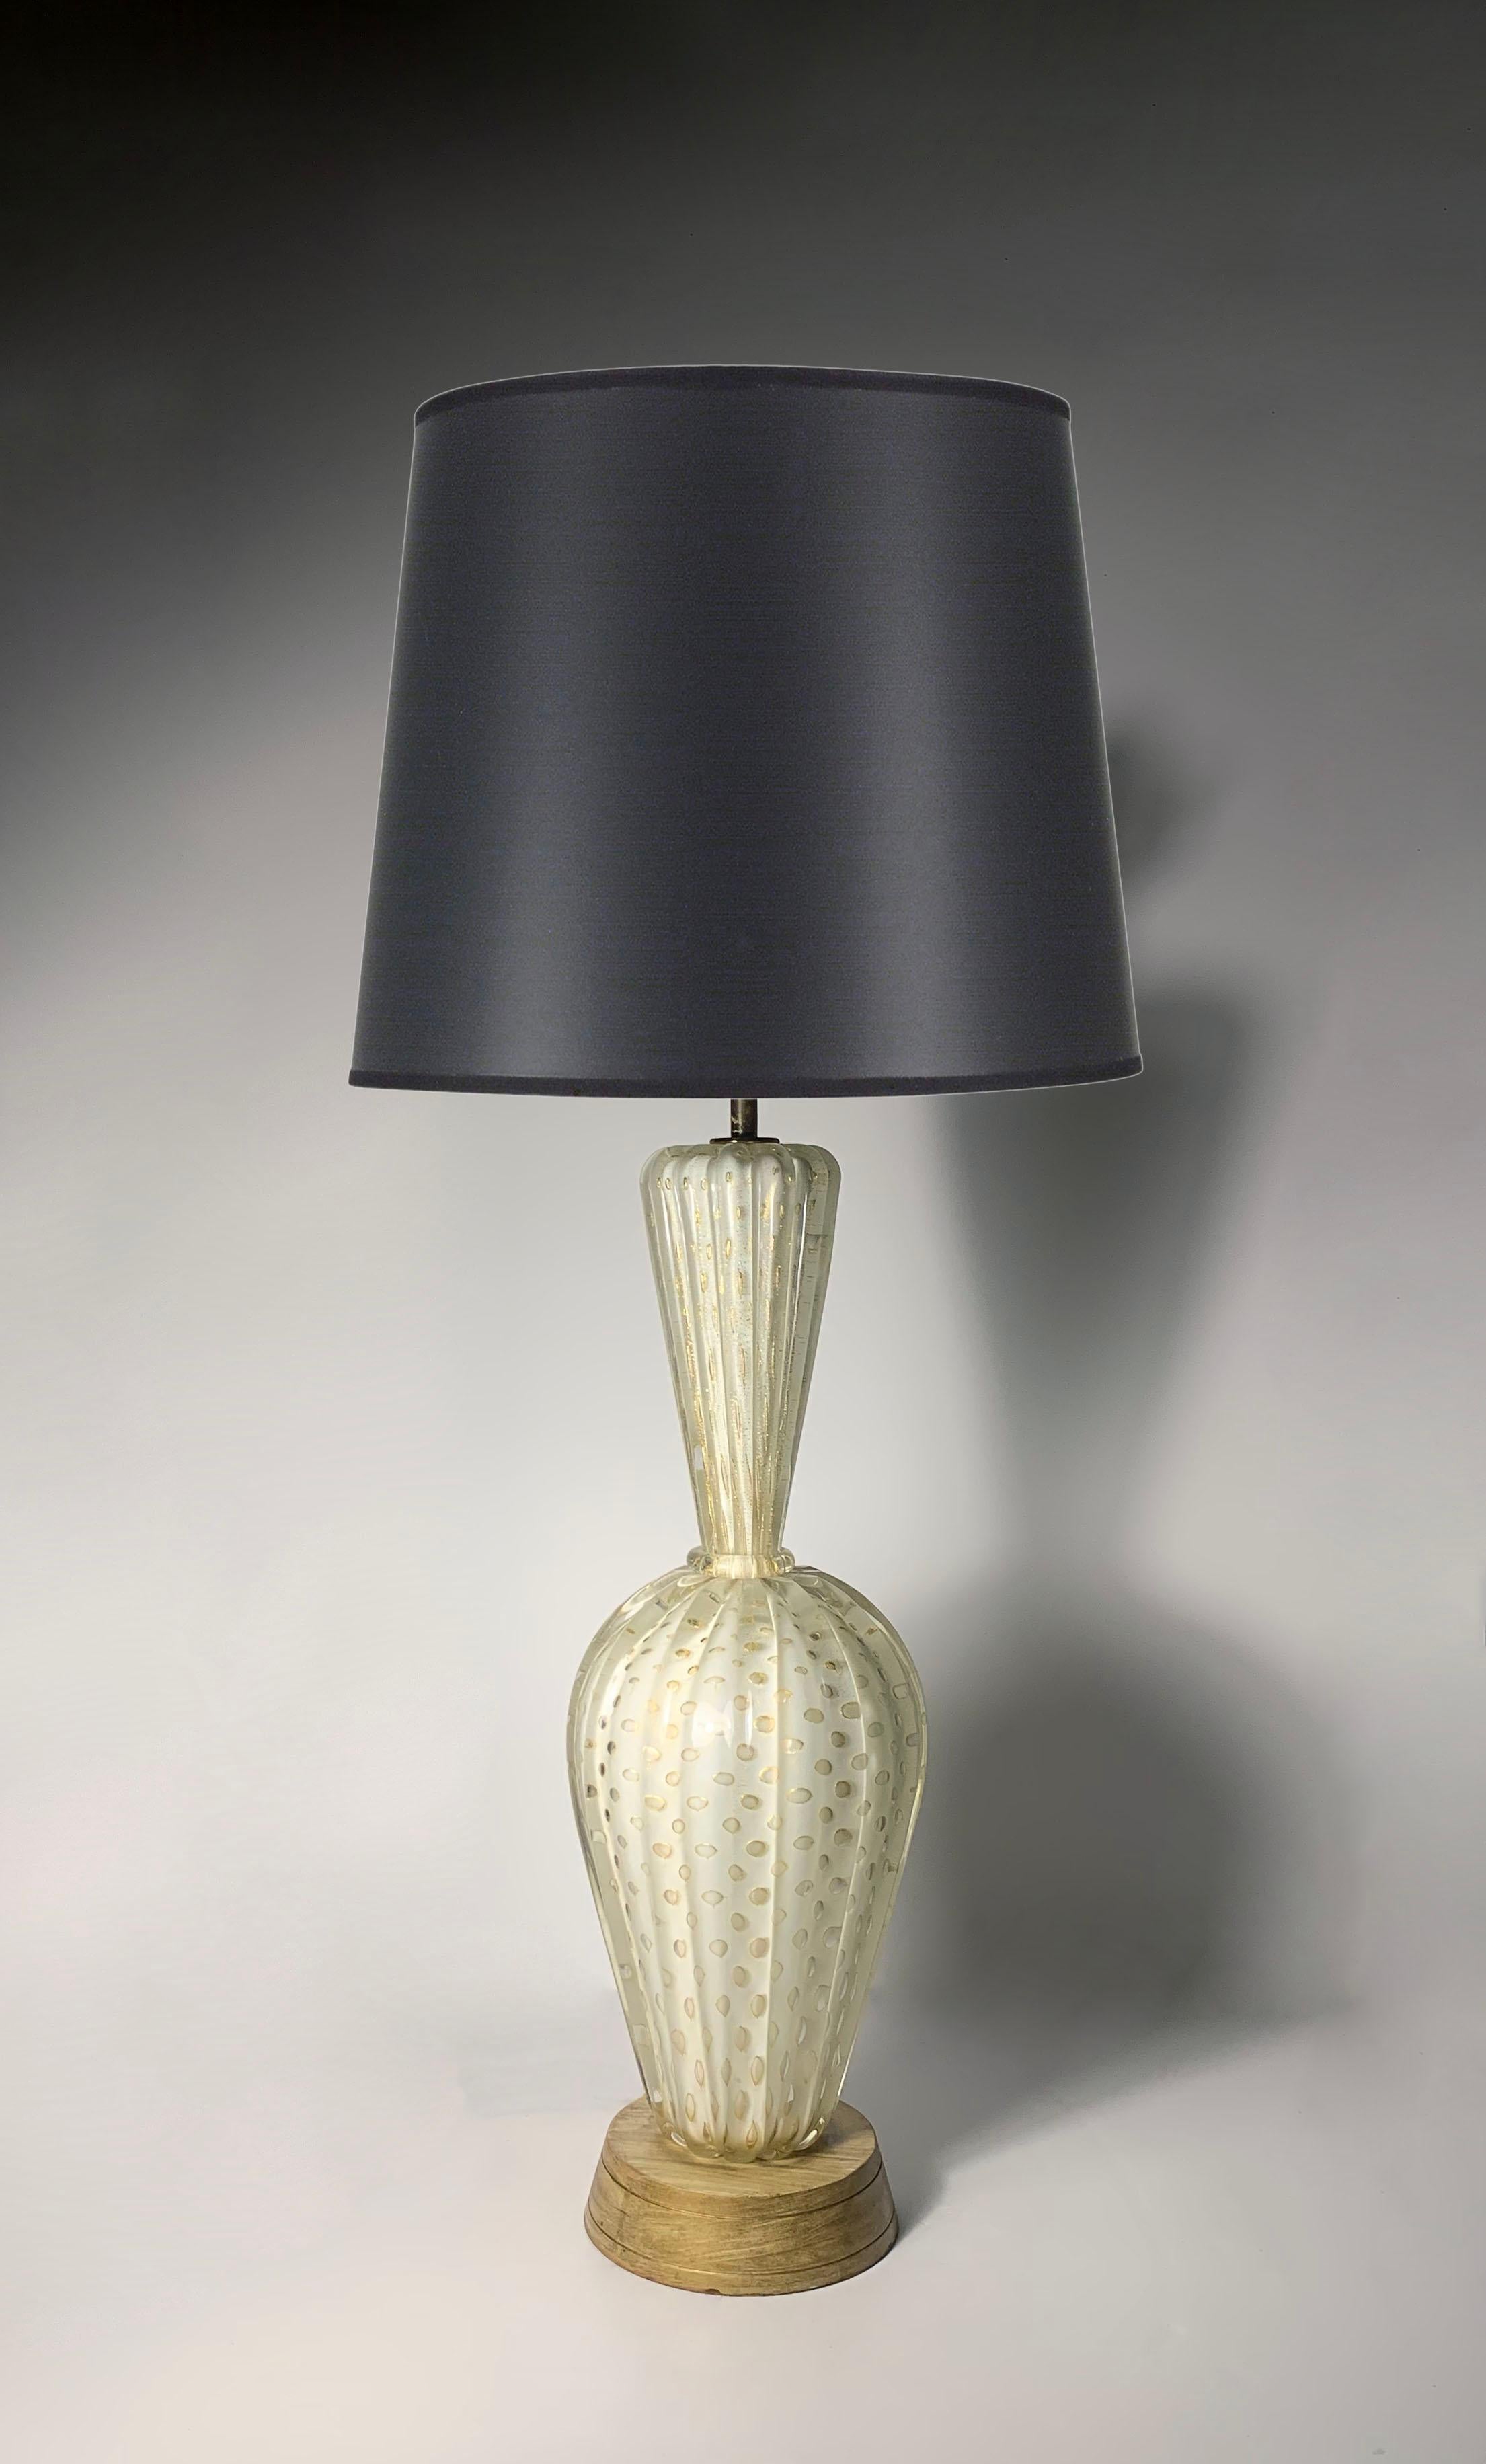 Barovier&Toso Lampe en verre de Murano

28